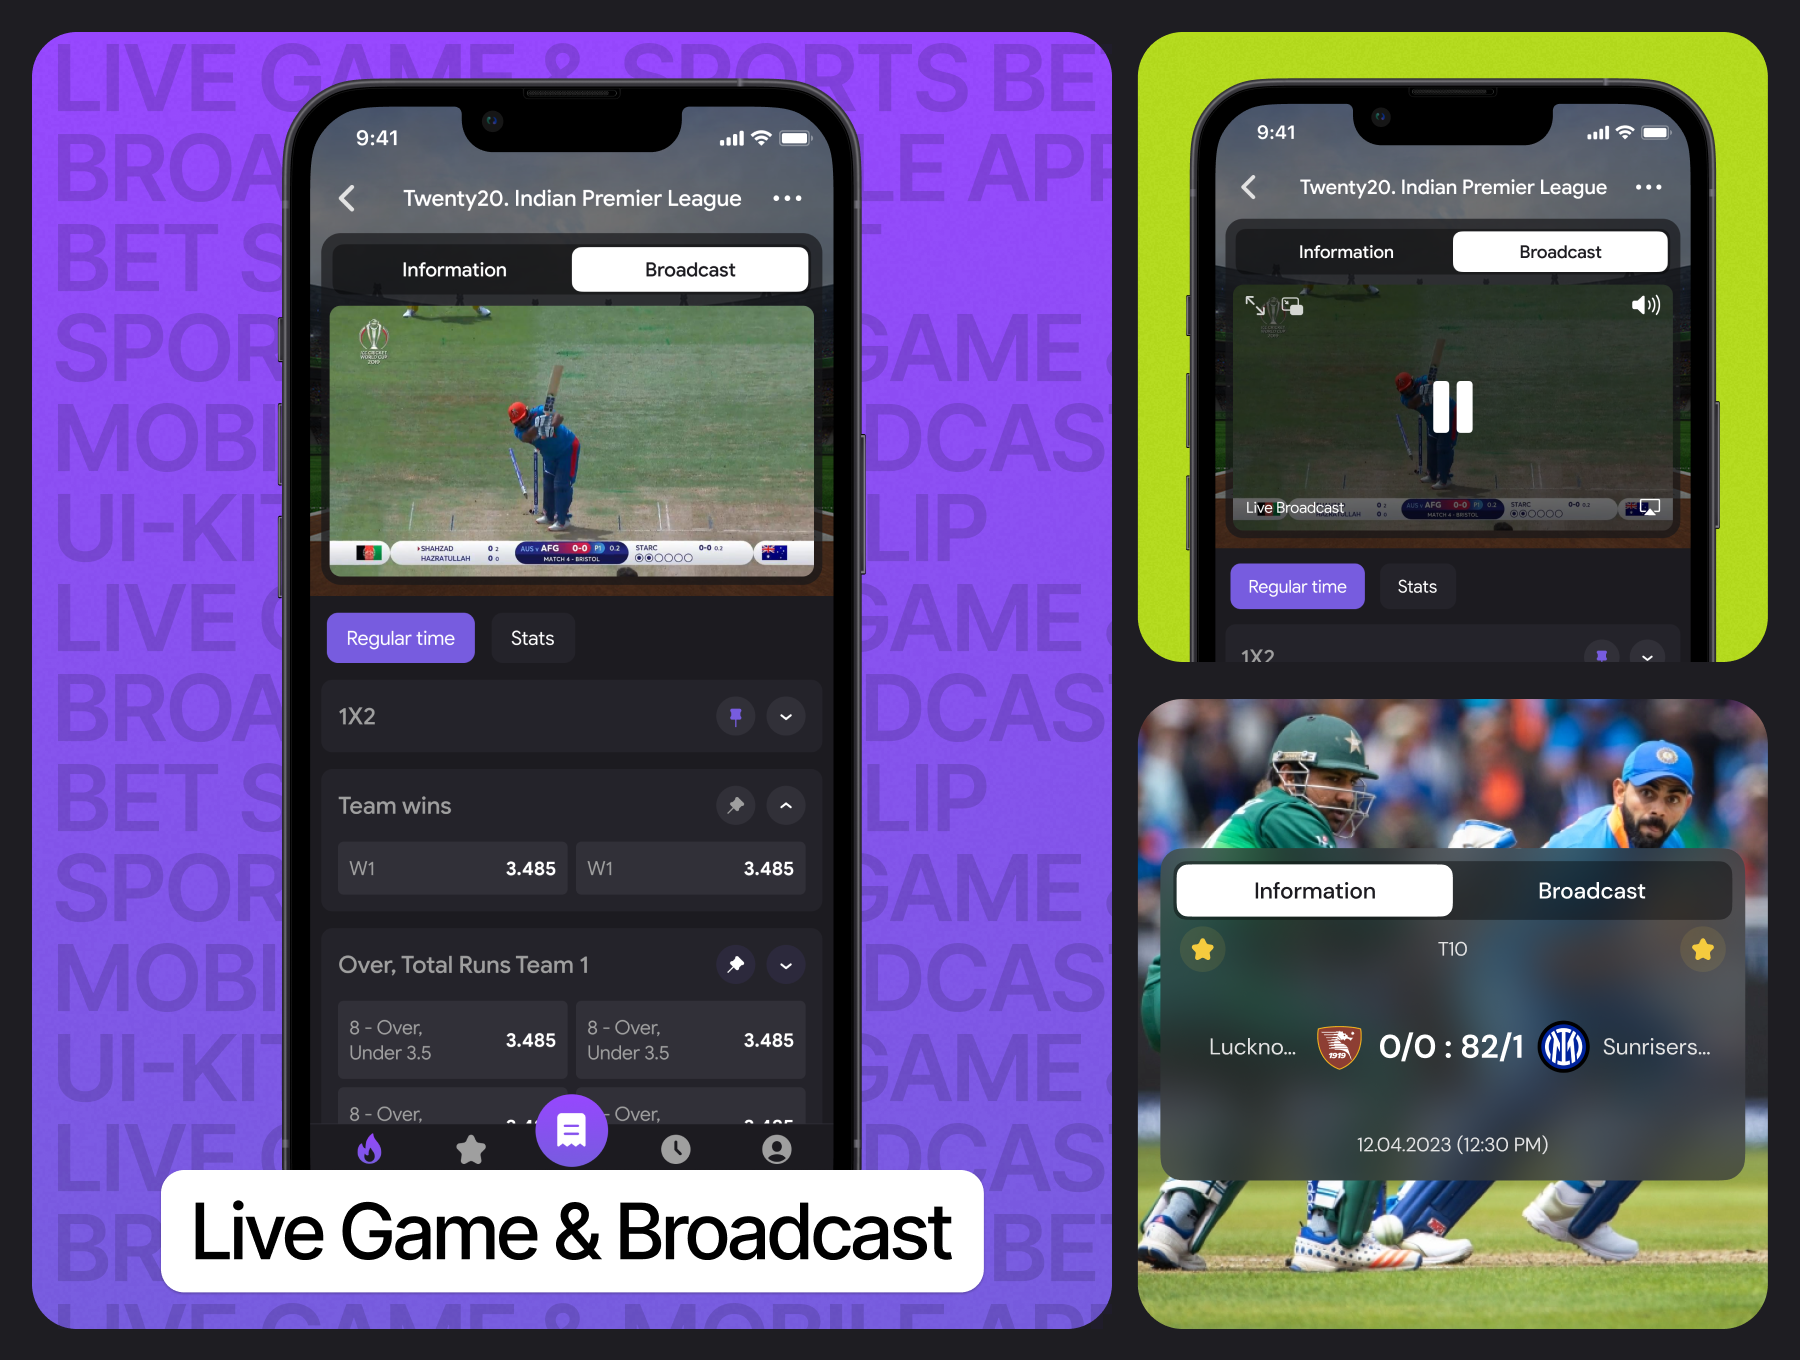 体育赌博移动应用UI套件 Sports bet mobile app UI Kit figma格式-UI/UX-到位啦UI